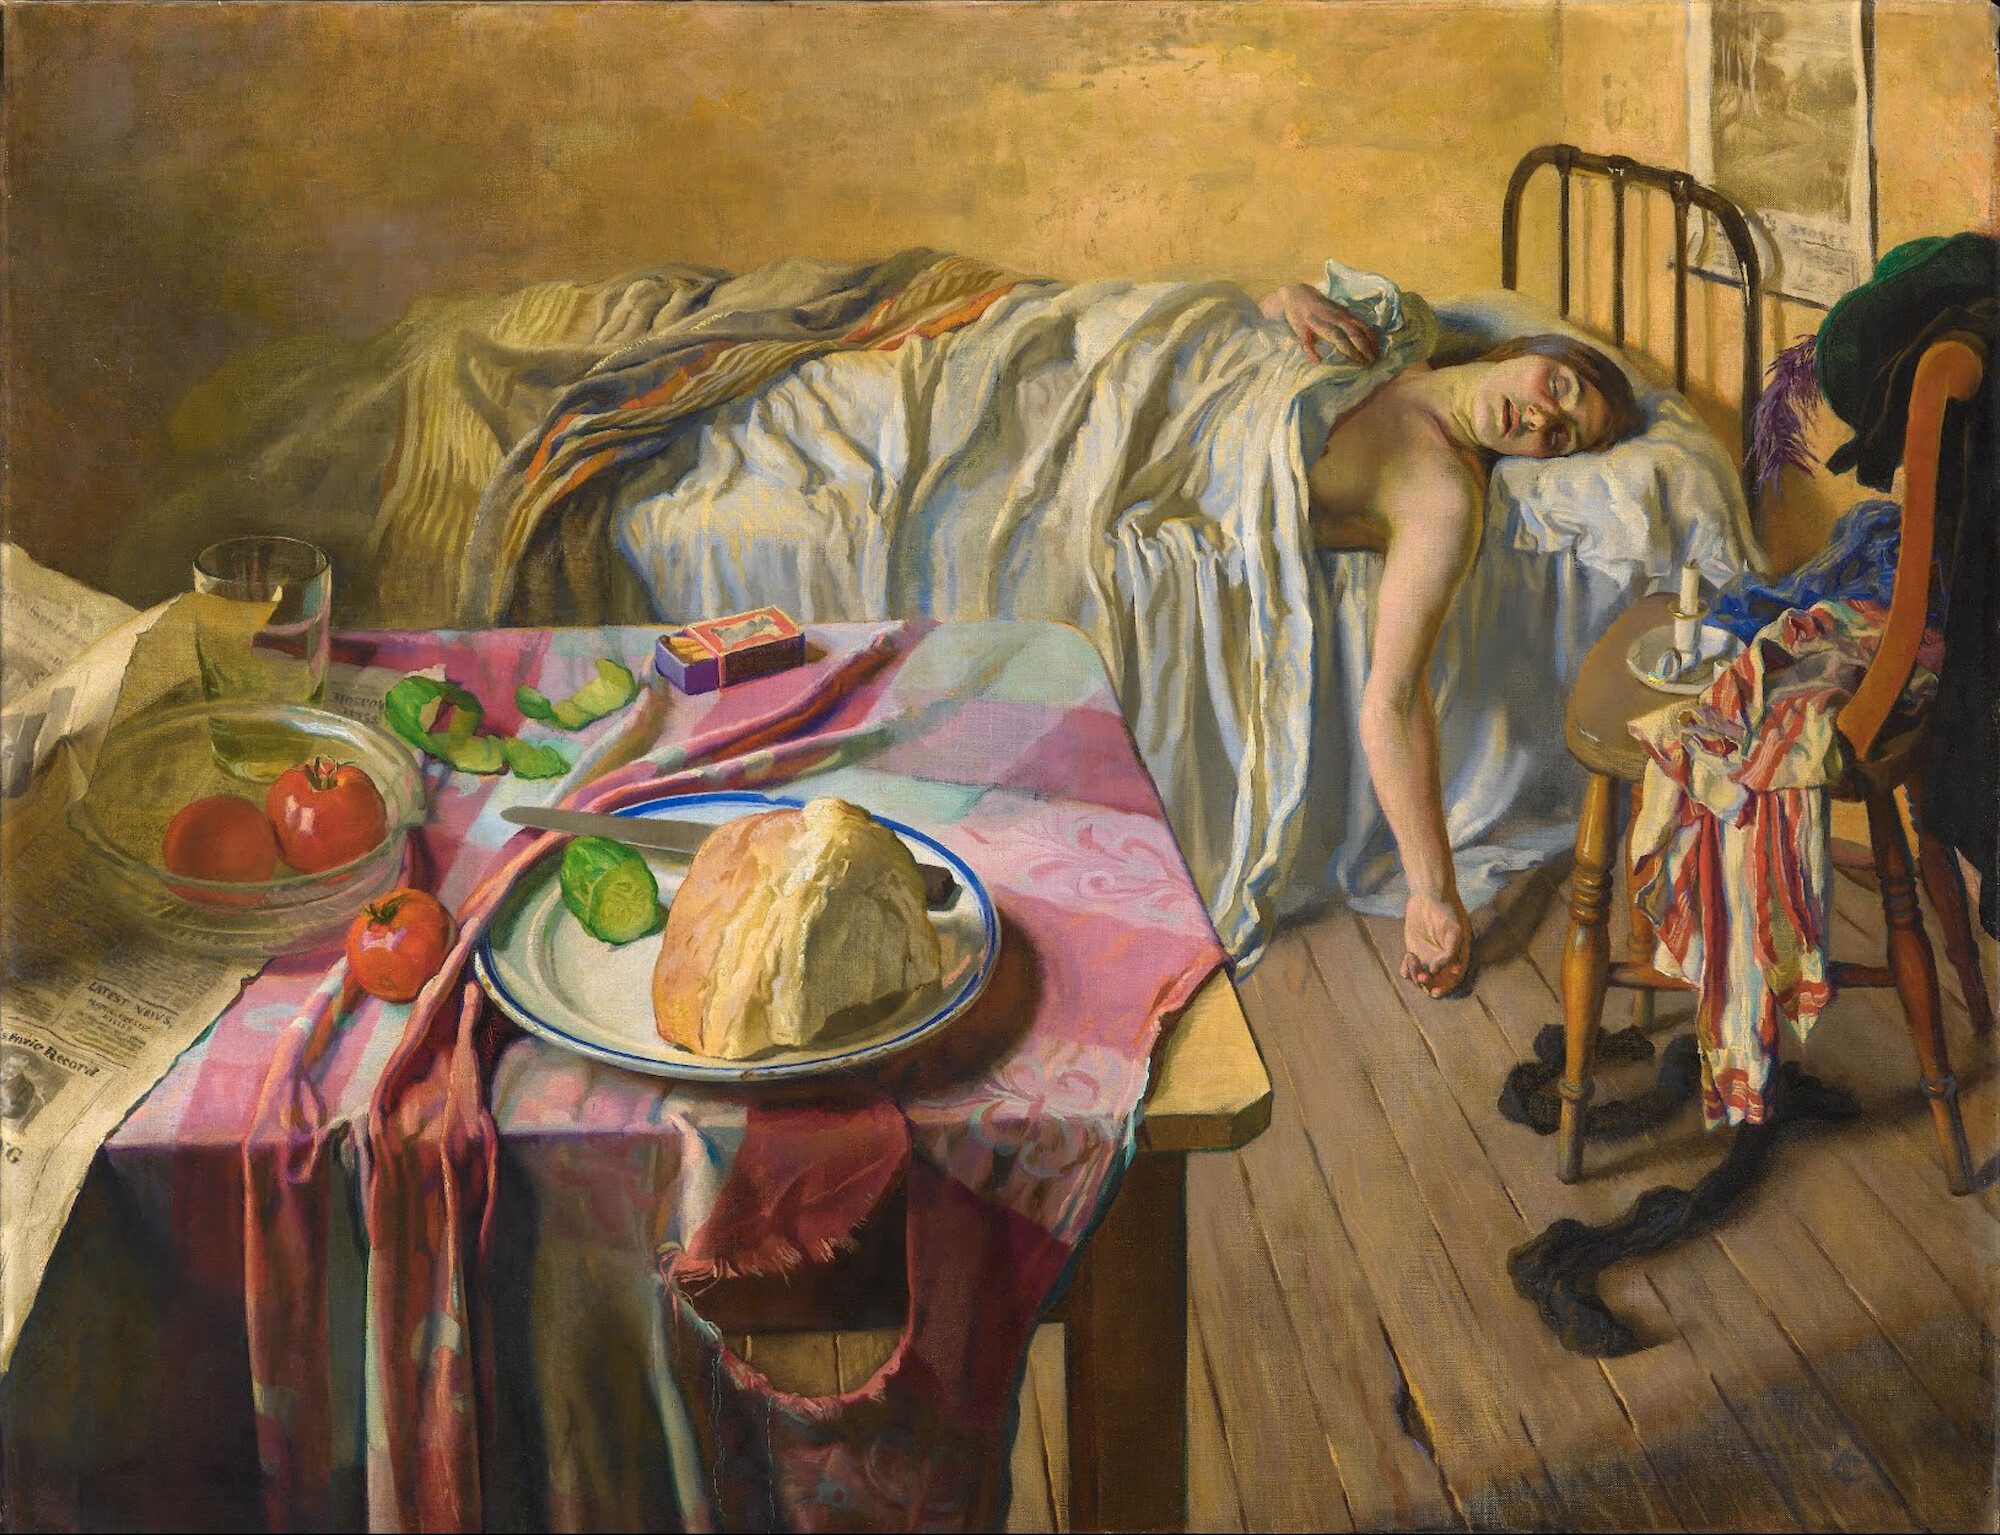 Sabah (orig. "Morning") by Isabel Codrington - 1934 - 87 x 112.5 cm 